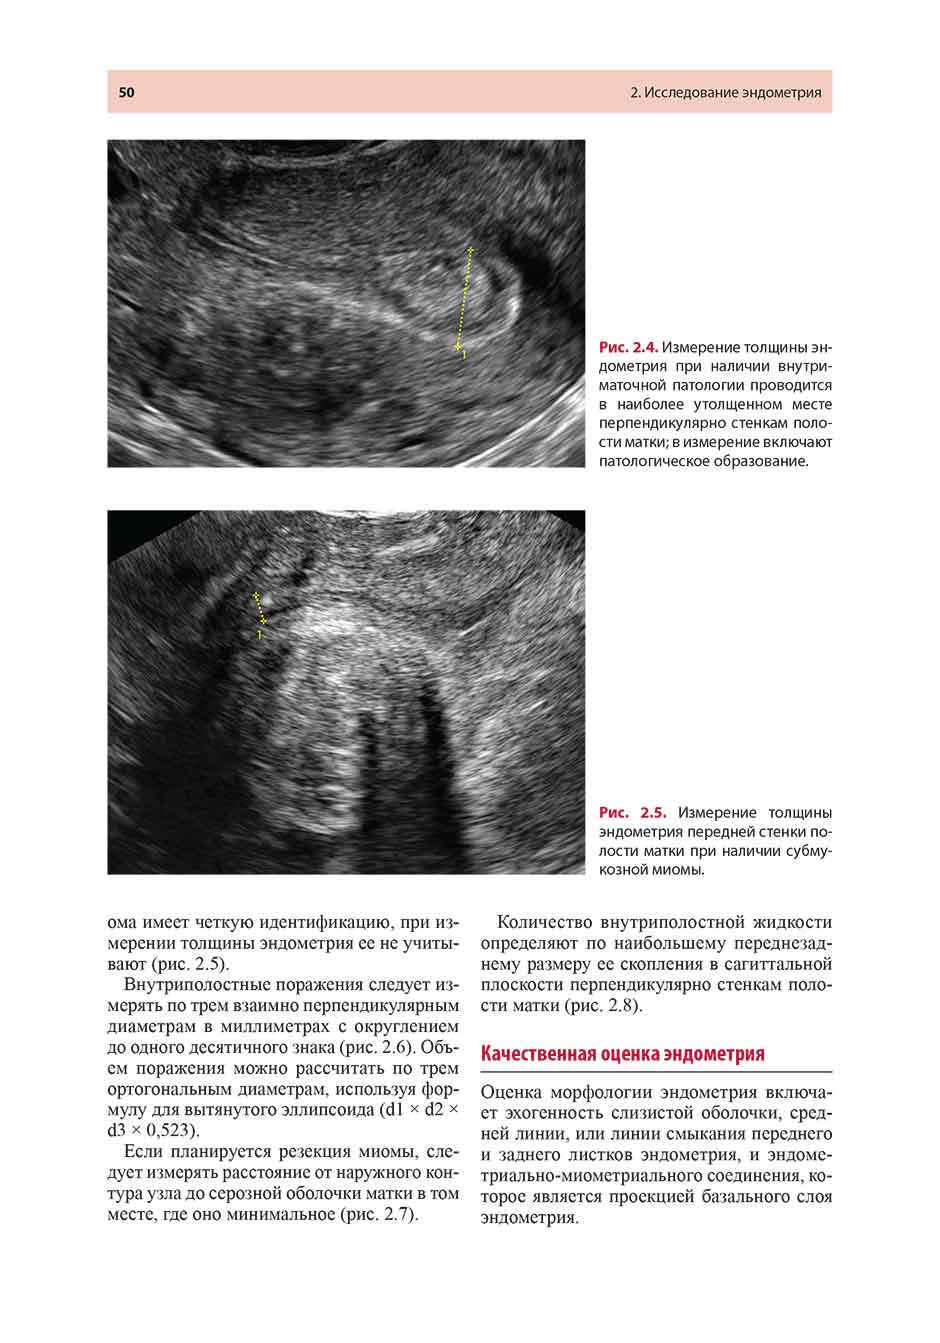 Рис. 2.5. Измерение толщины эндометрия передней стенки полости матки при наличии субмукозной миомы.